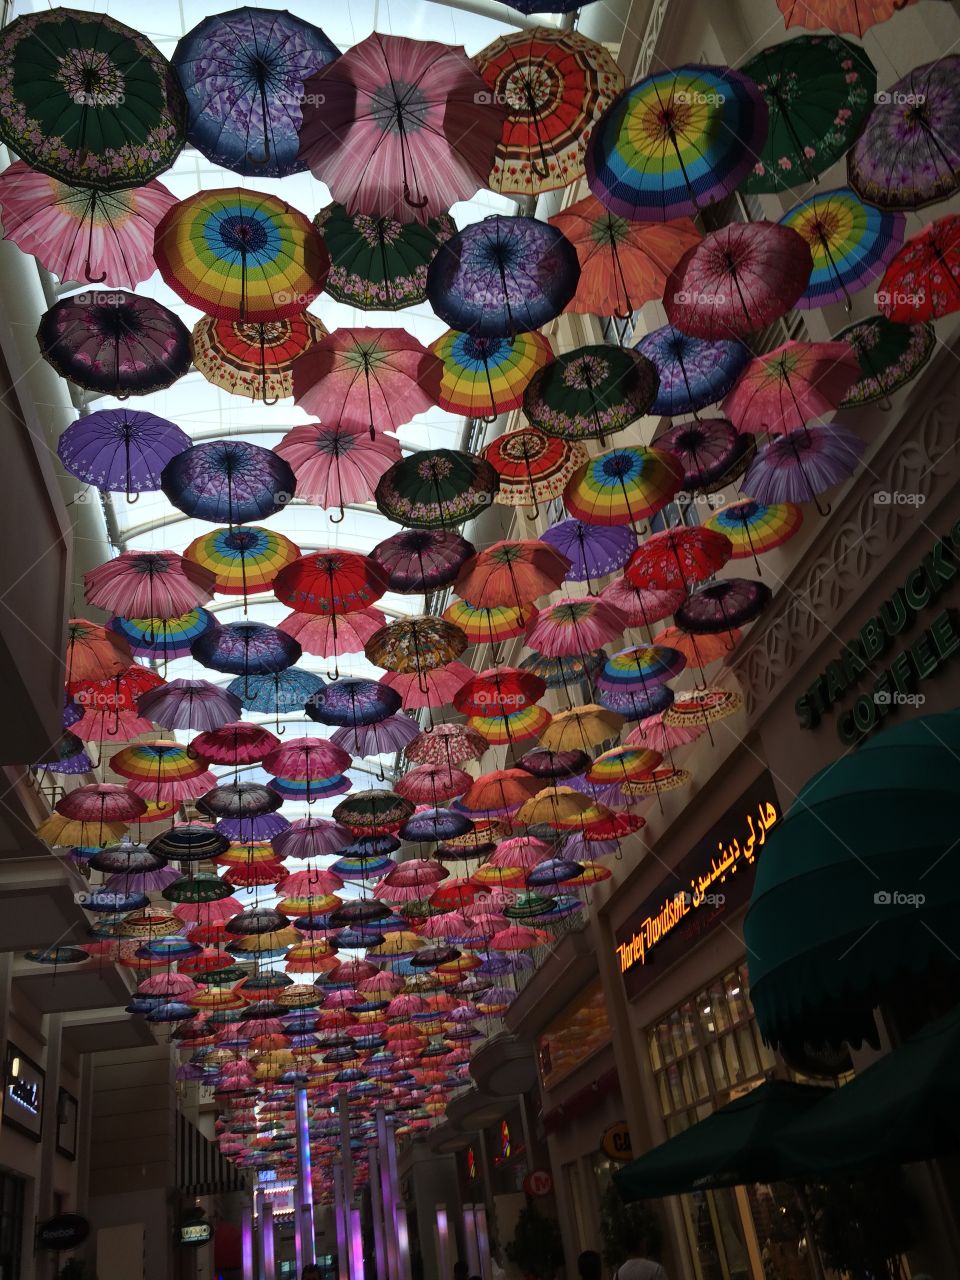 Umbrellas in Dubai (Dubai Mall).